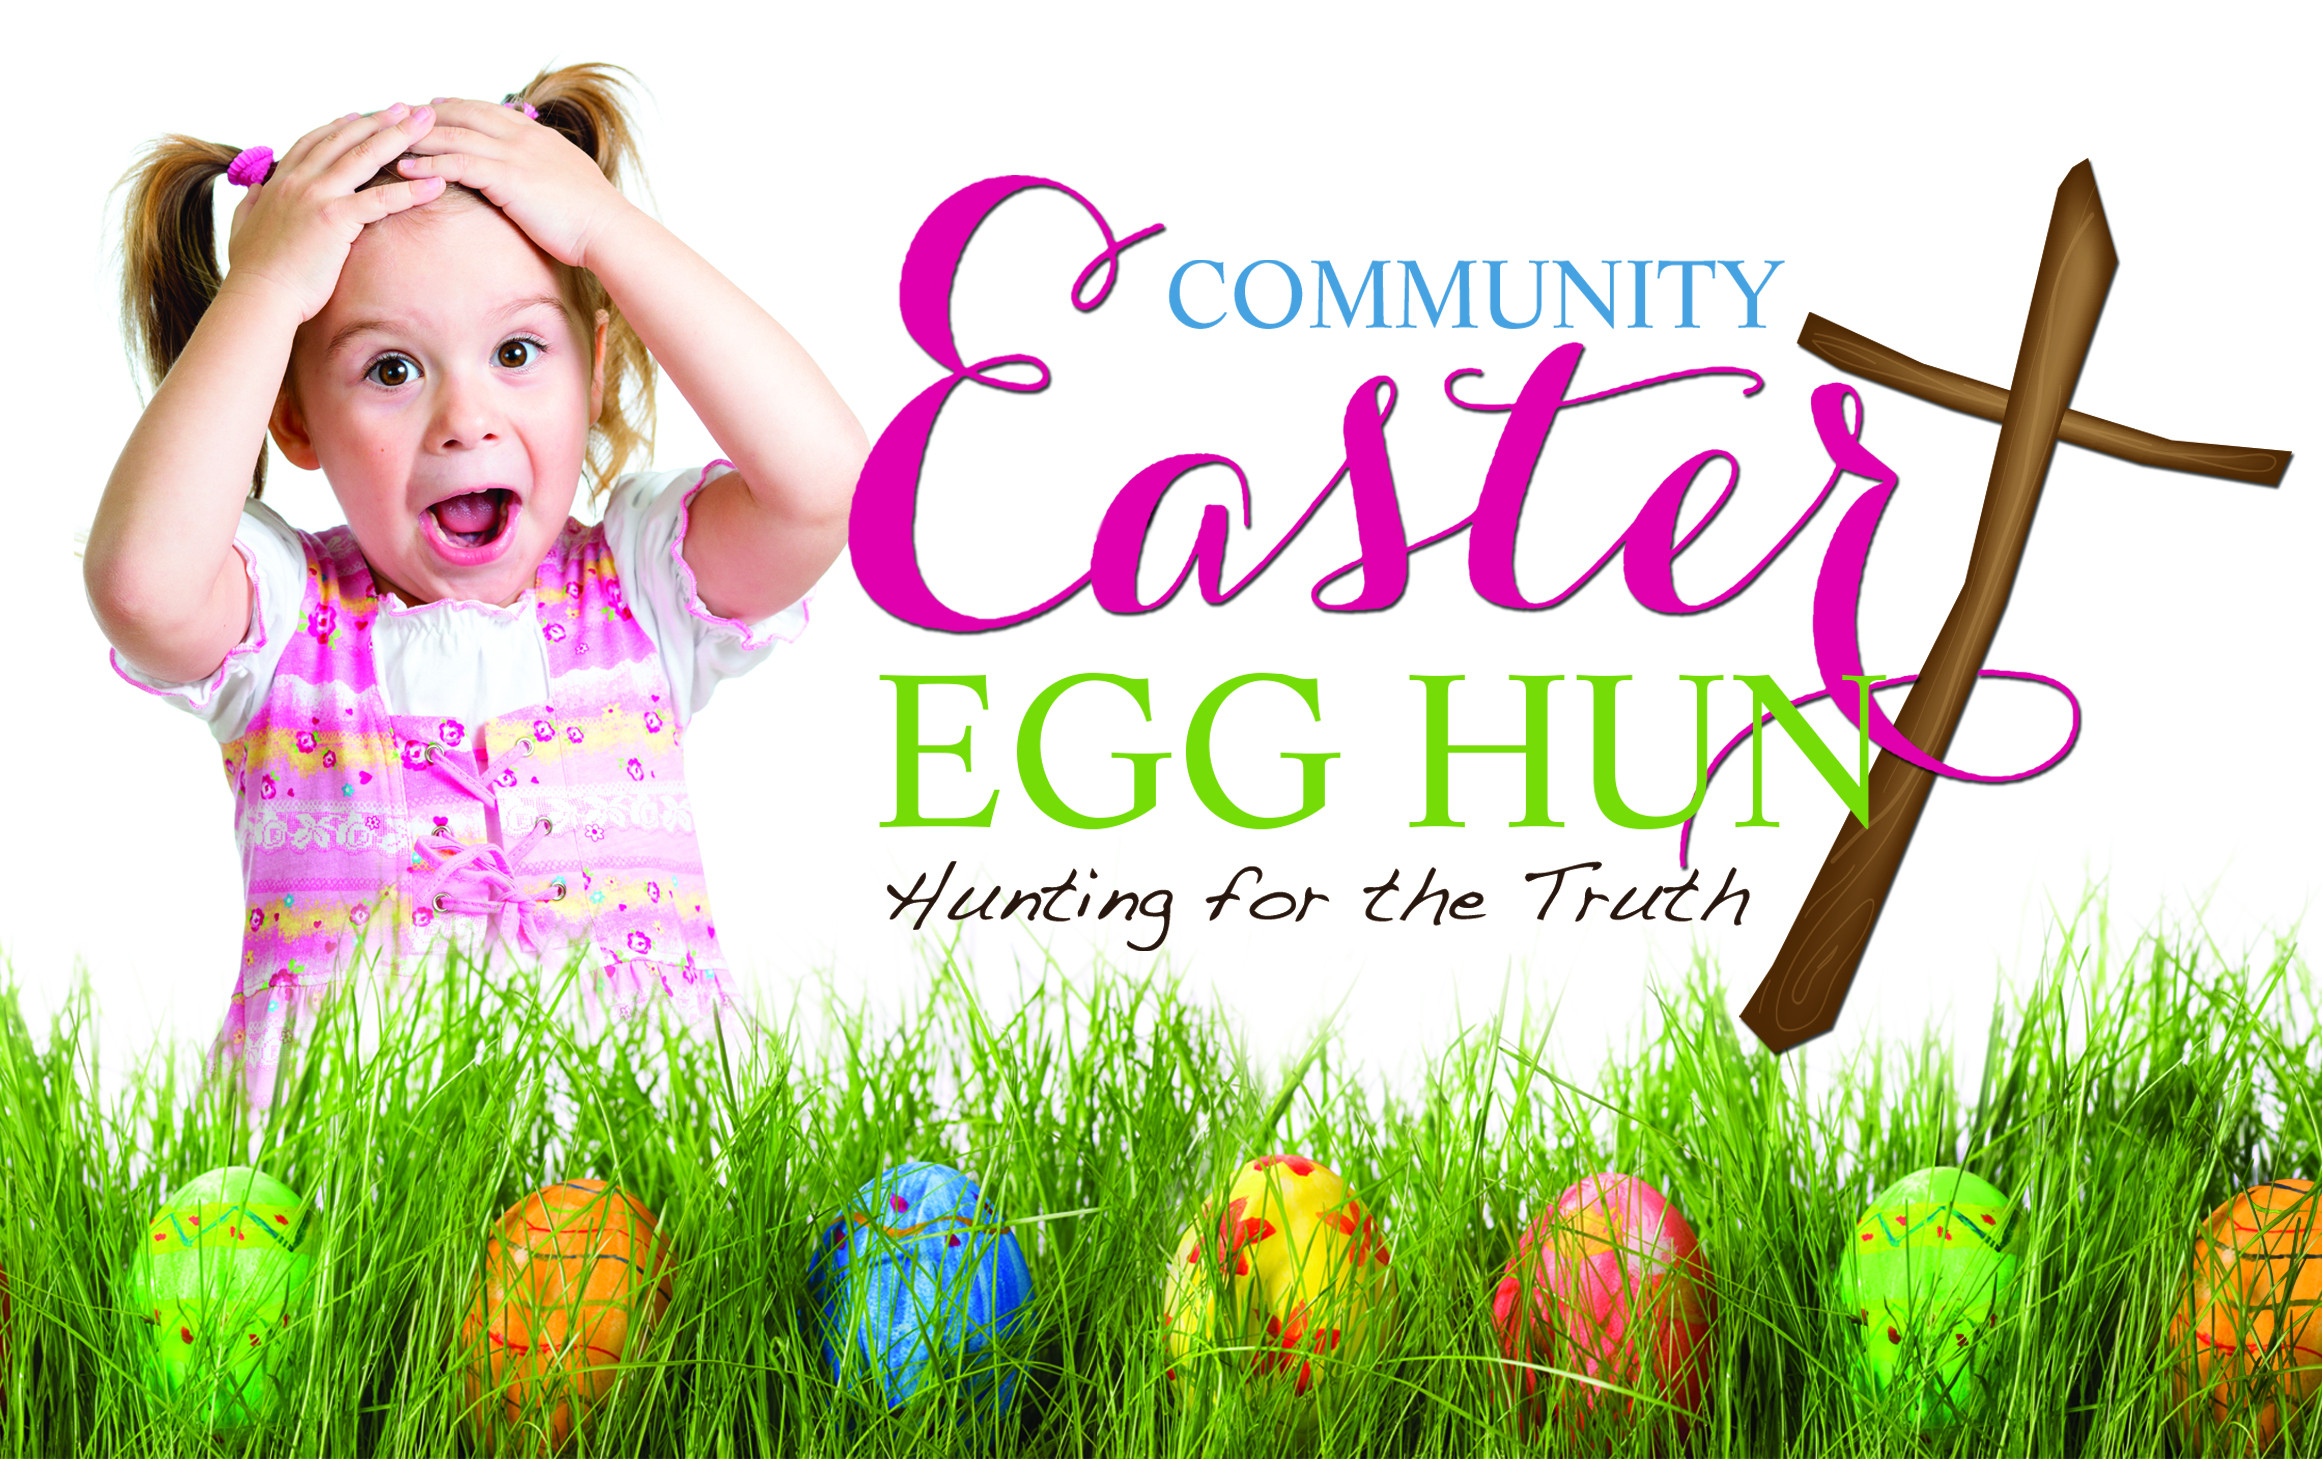 Easter Egg Hunt Ideas For Church
 Annual Easter Egg Hunt